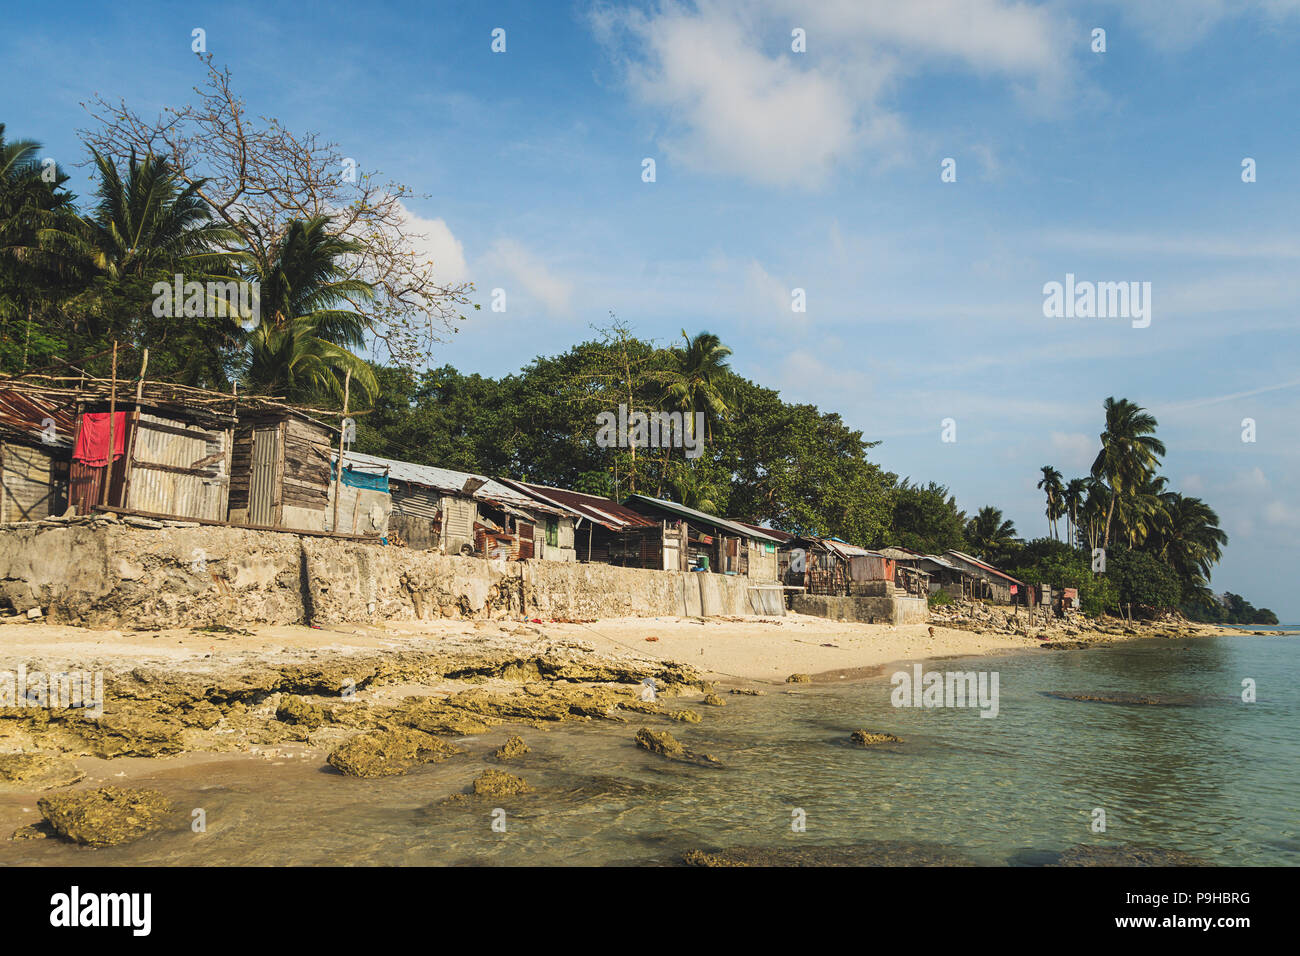 Eine alte Baracke für die Armen. Armut ist das Problem der Menschheit. Fischer Hütte im tropischen Dorf in der Nähe des Meeres. Andaman und Nicobar Inseln. Indien Stockfoto